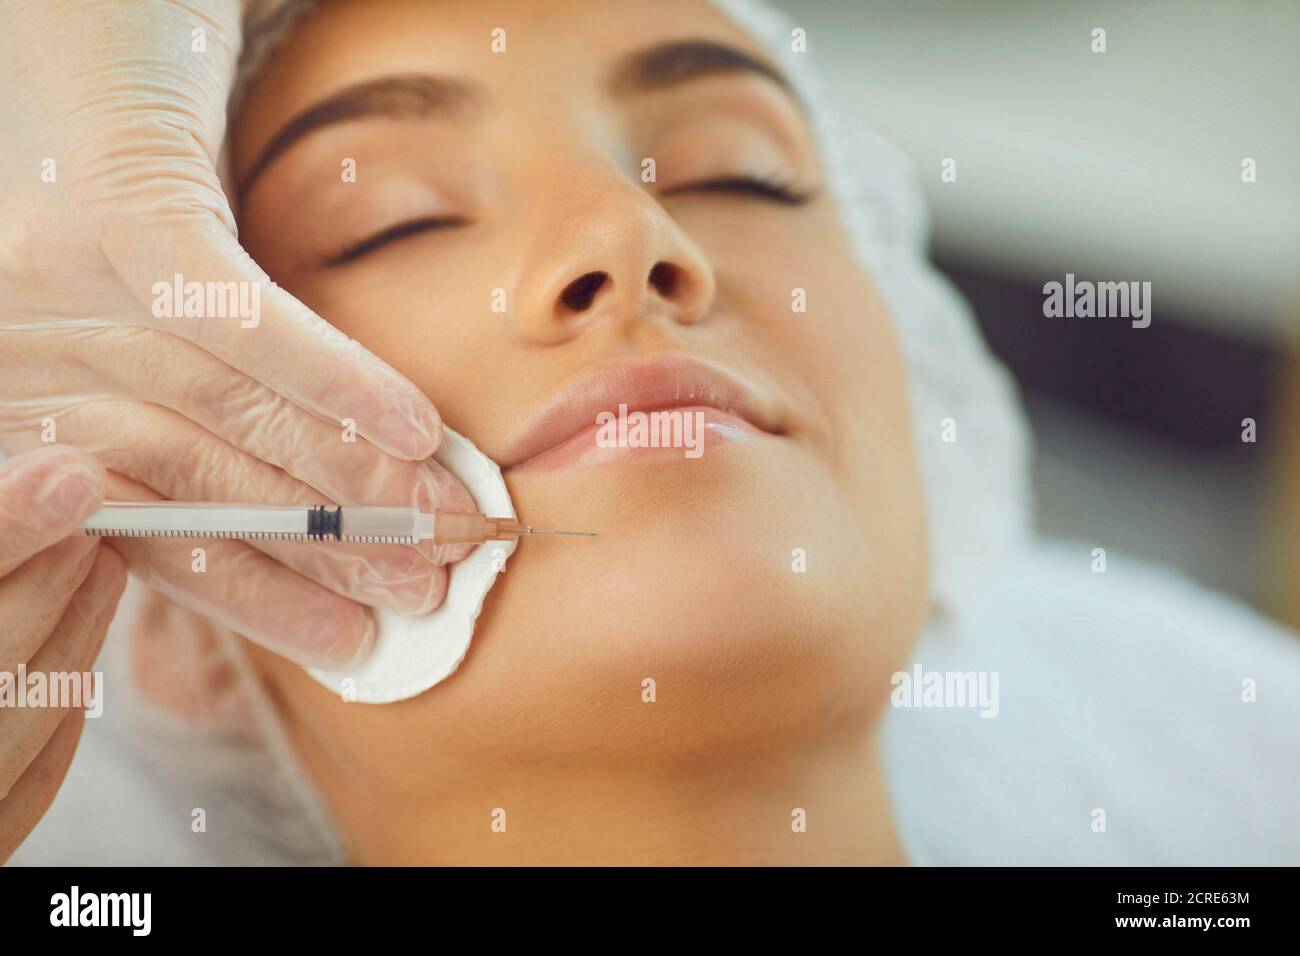 Donna che riceve la bellezza facciale iniezione botox al mento da professionista cosmetologo Foto Stock